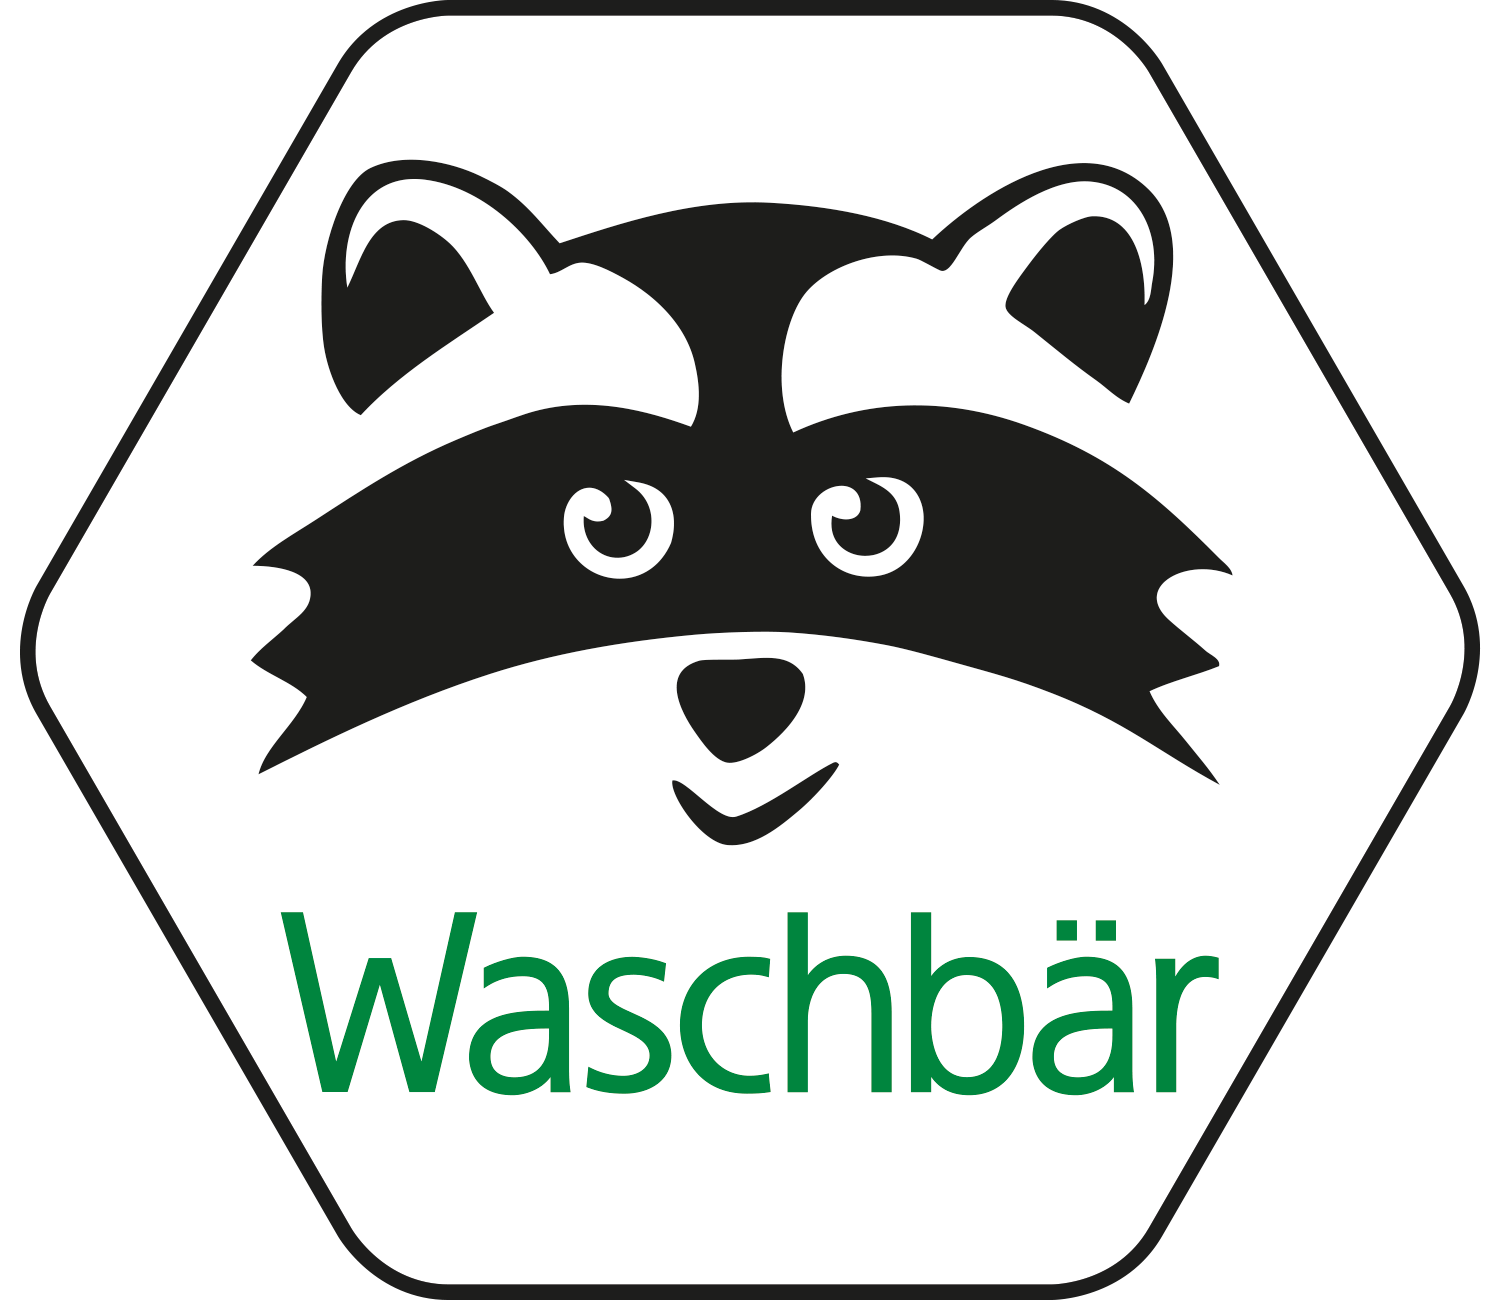 Waschbaer Ecoshop